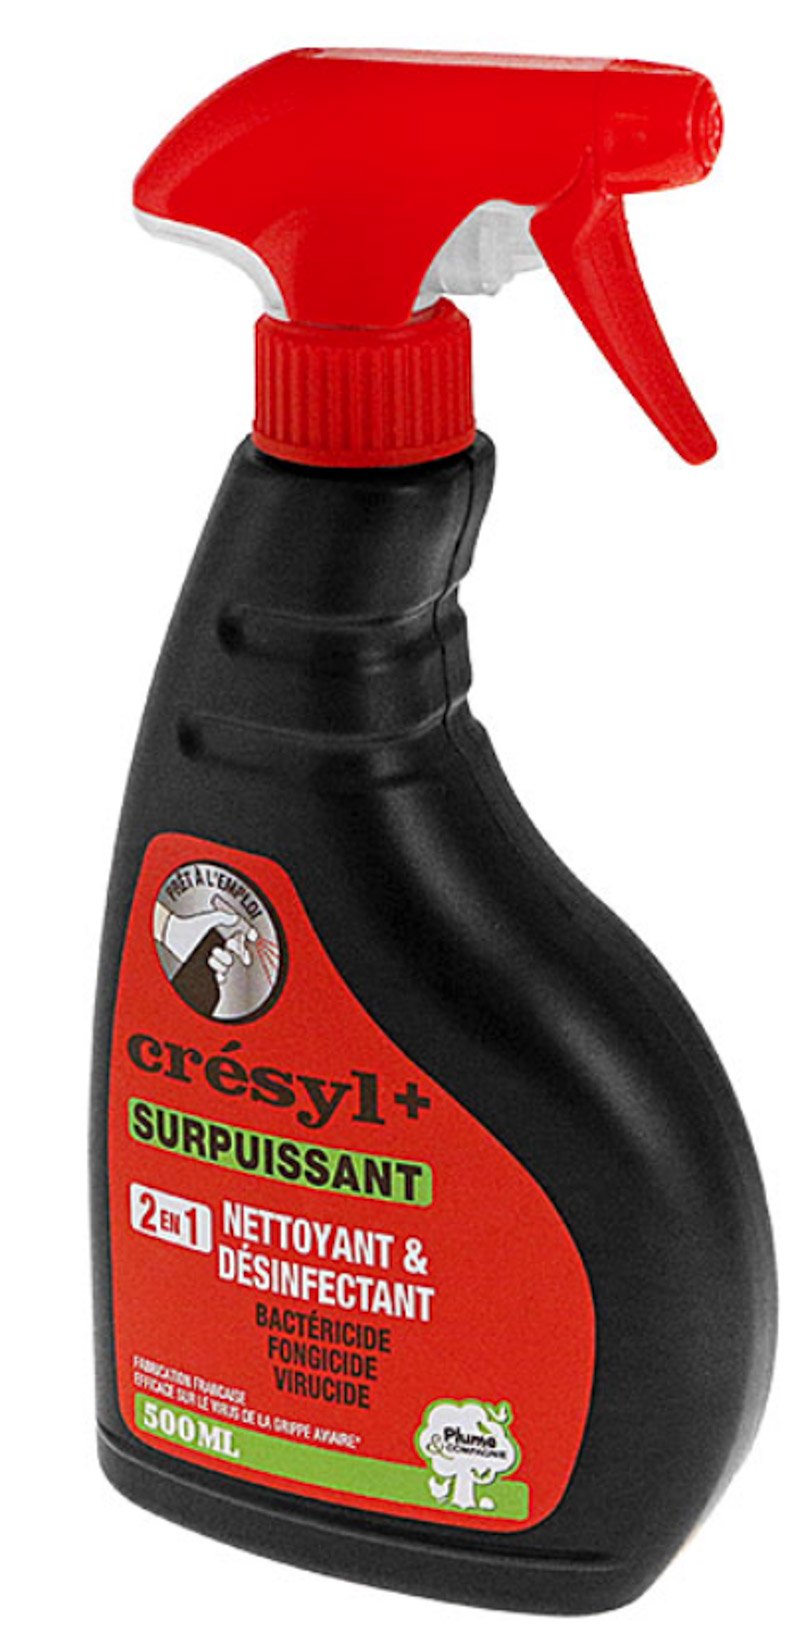 Cresyl+ Surpuissant pour nettoyer et désinfecter le poulailler